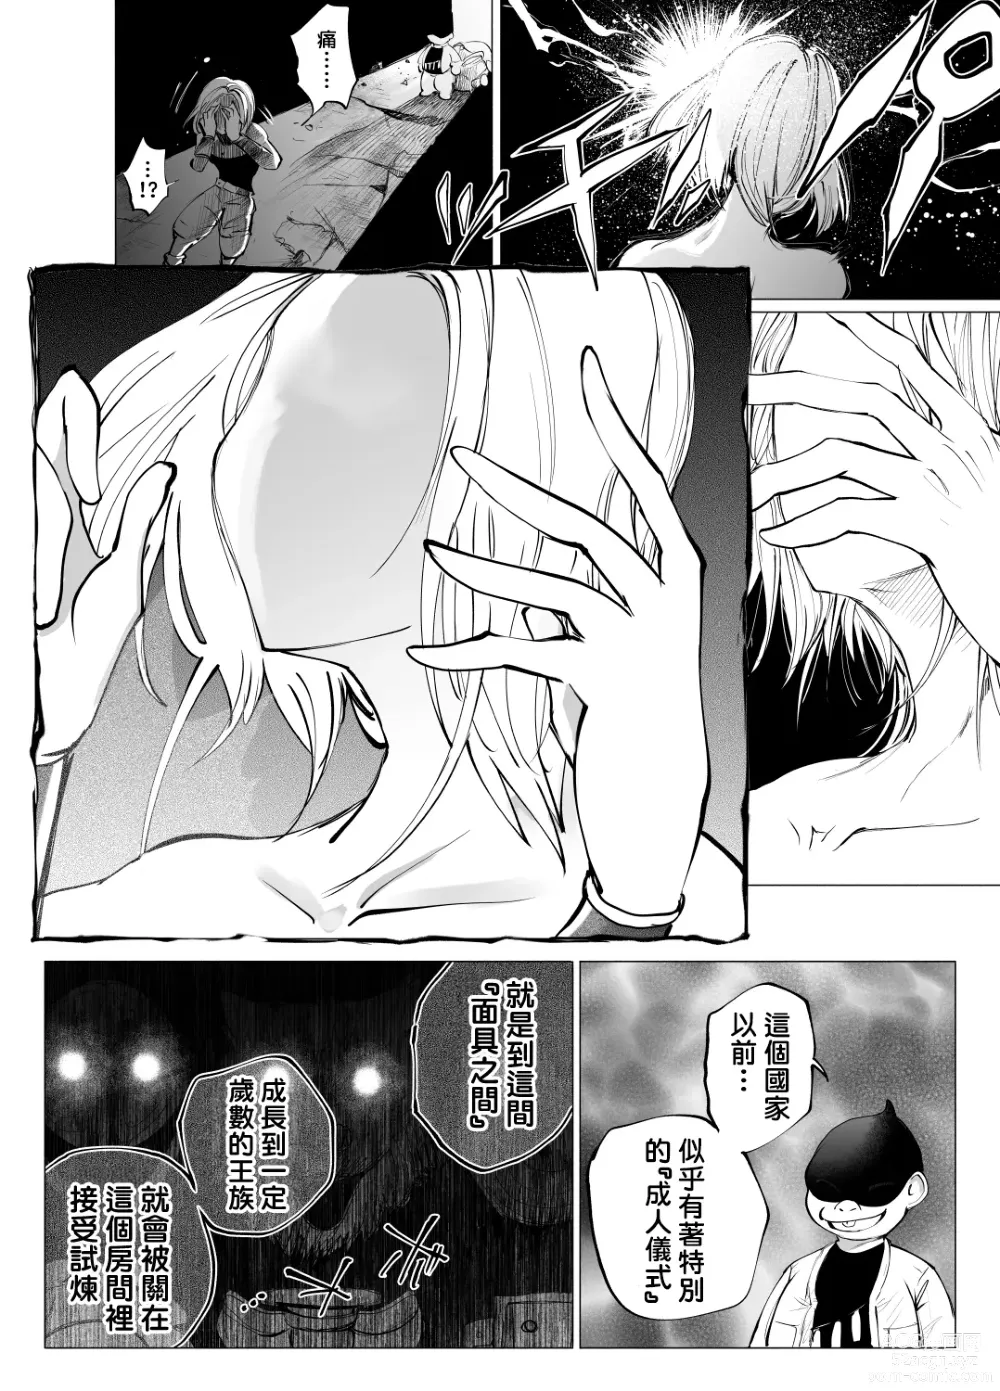 Page 2 of doujinshi 盗贼与面具遗迹